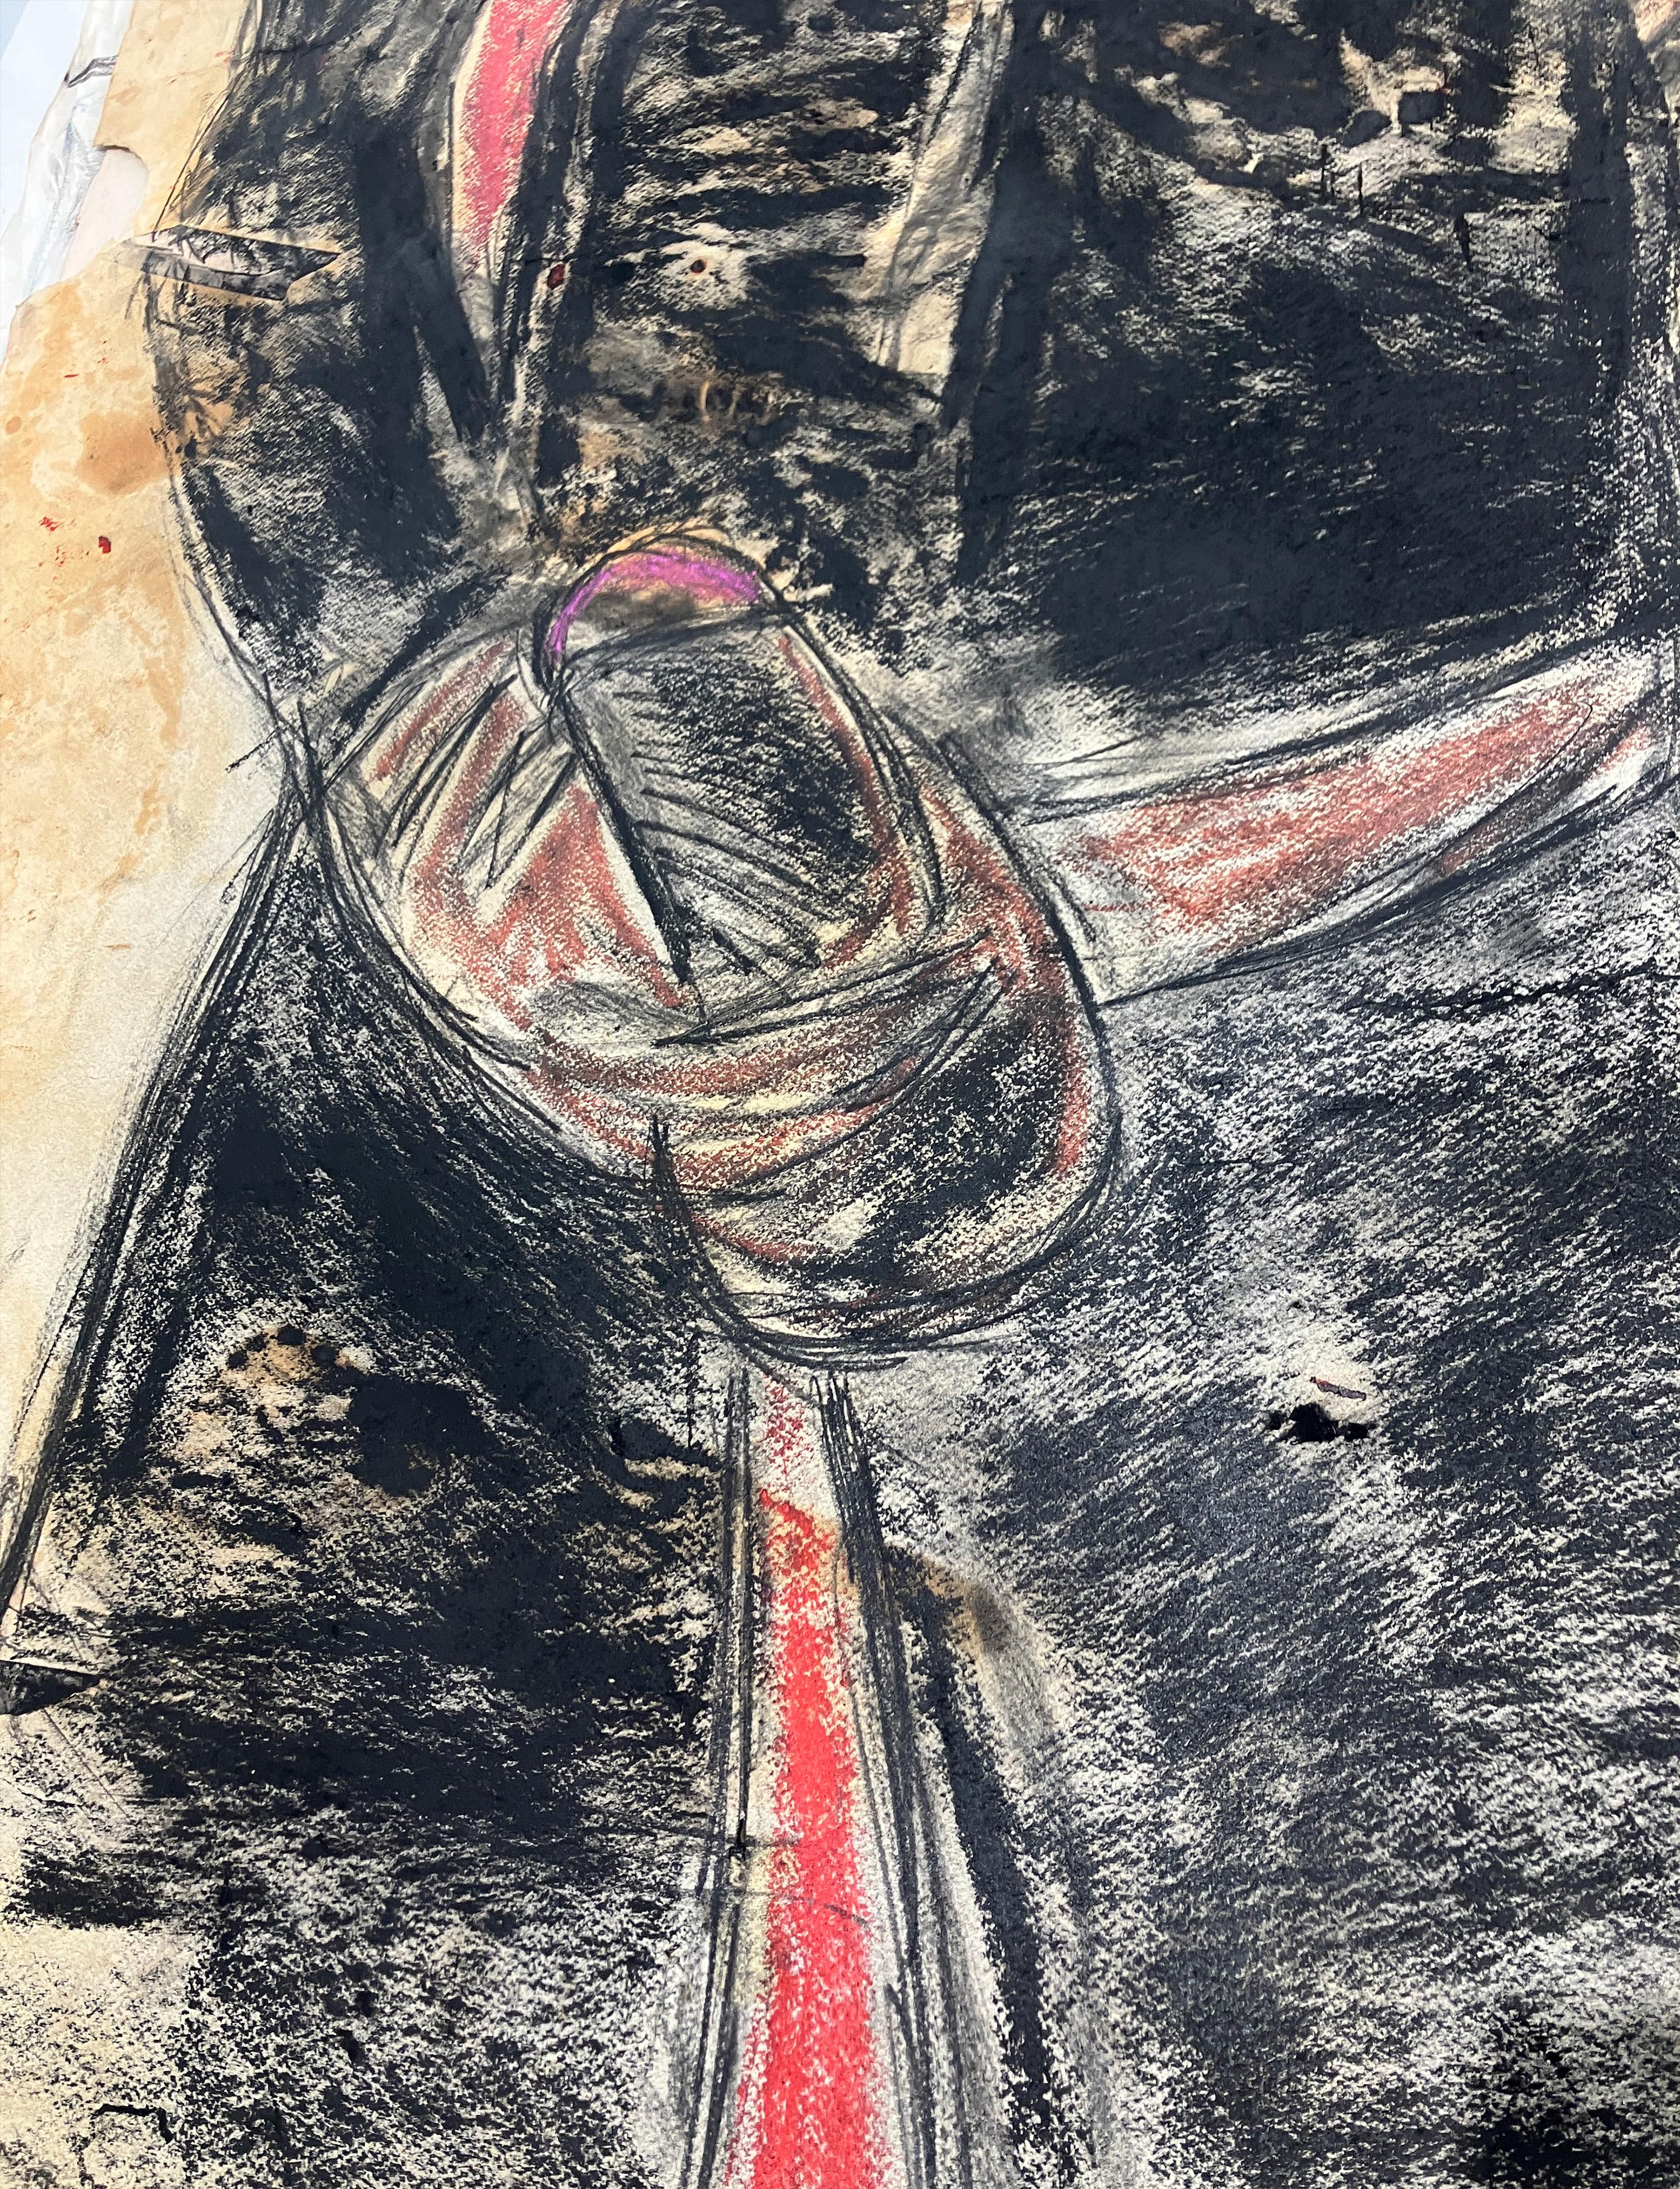 Jose antonio, Martes 7 de julio 2016,  par Celso Castro
Crayon Pastel sur papier d'archivage
Taille de l'image : 60 H in. x 38 in. W 
Non encadré

Au dos du tableau :
Résumé, 1986
Crayon et pastel sur papier d'archivage
Non